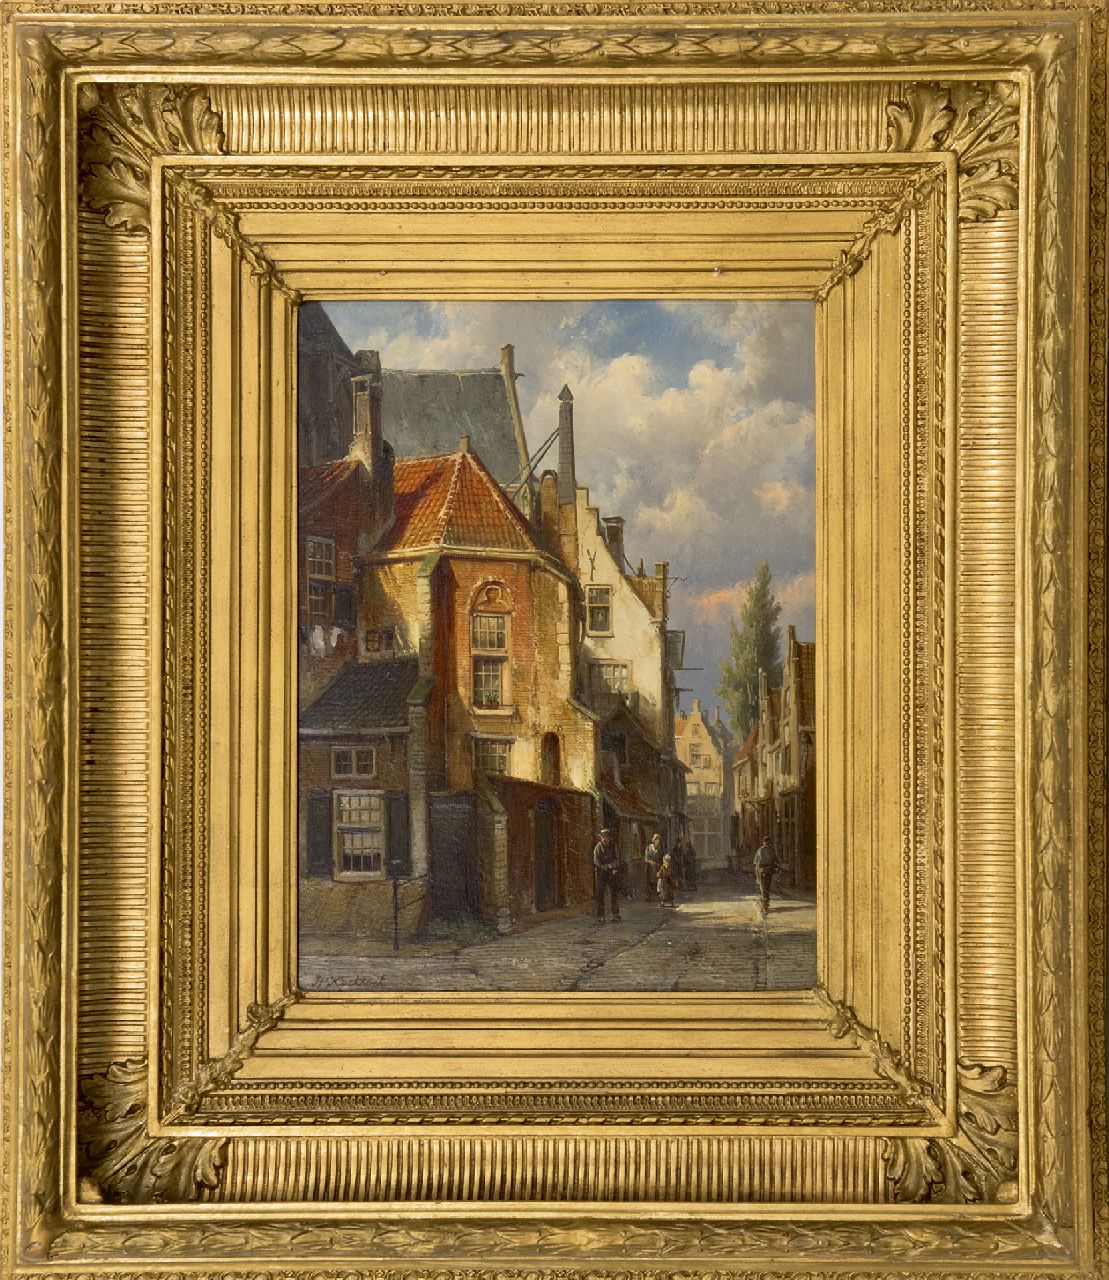 Koekkoek W.  | Willem Koekkoek | Schilderijen te koop aangeboden | Straatje achter de kerk, olieverf op paneel 38,3 x 29,5 cm, gesigneerd linksonder